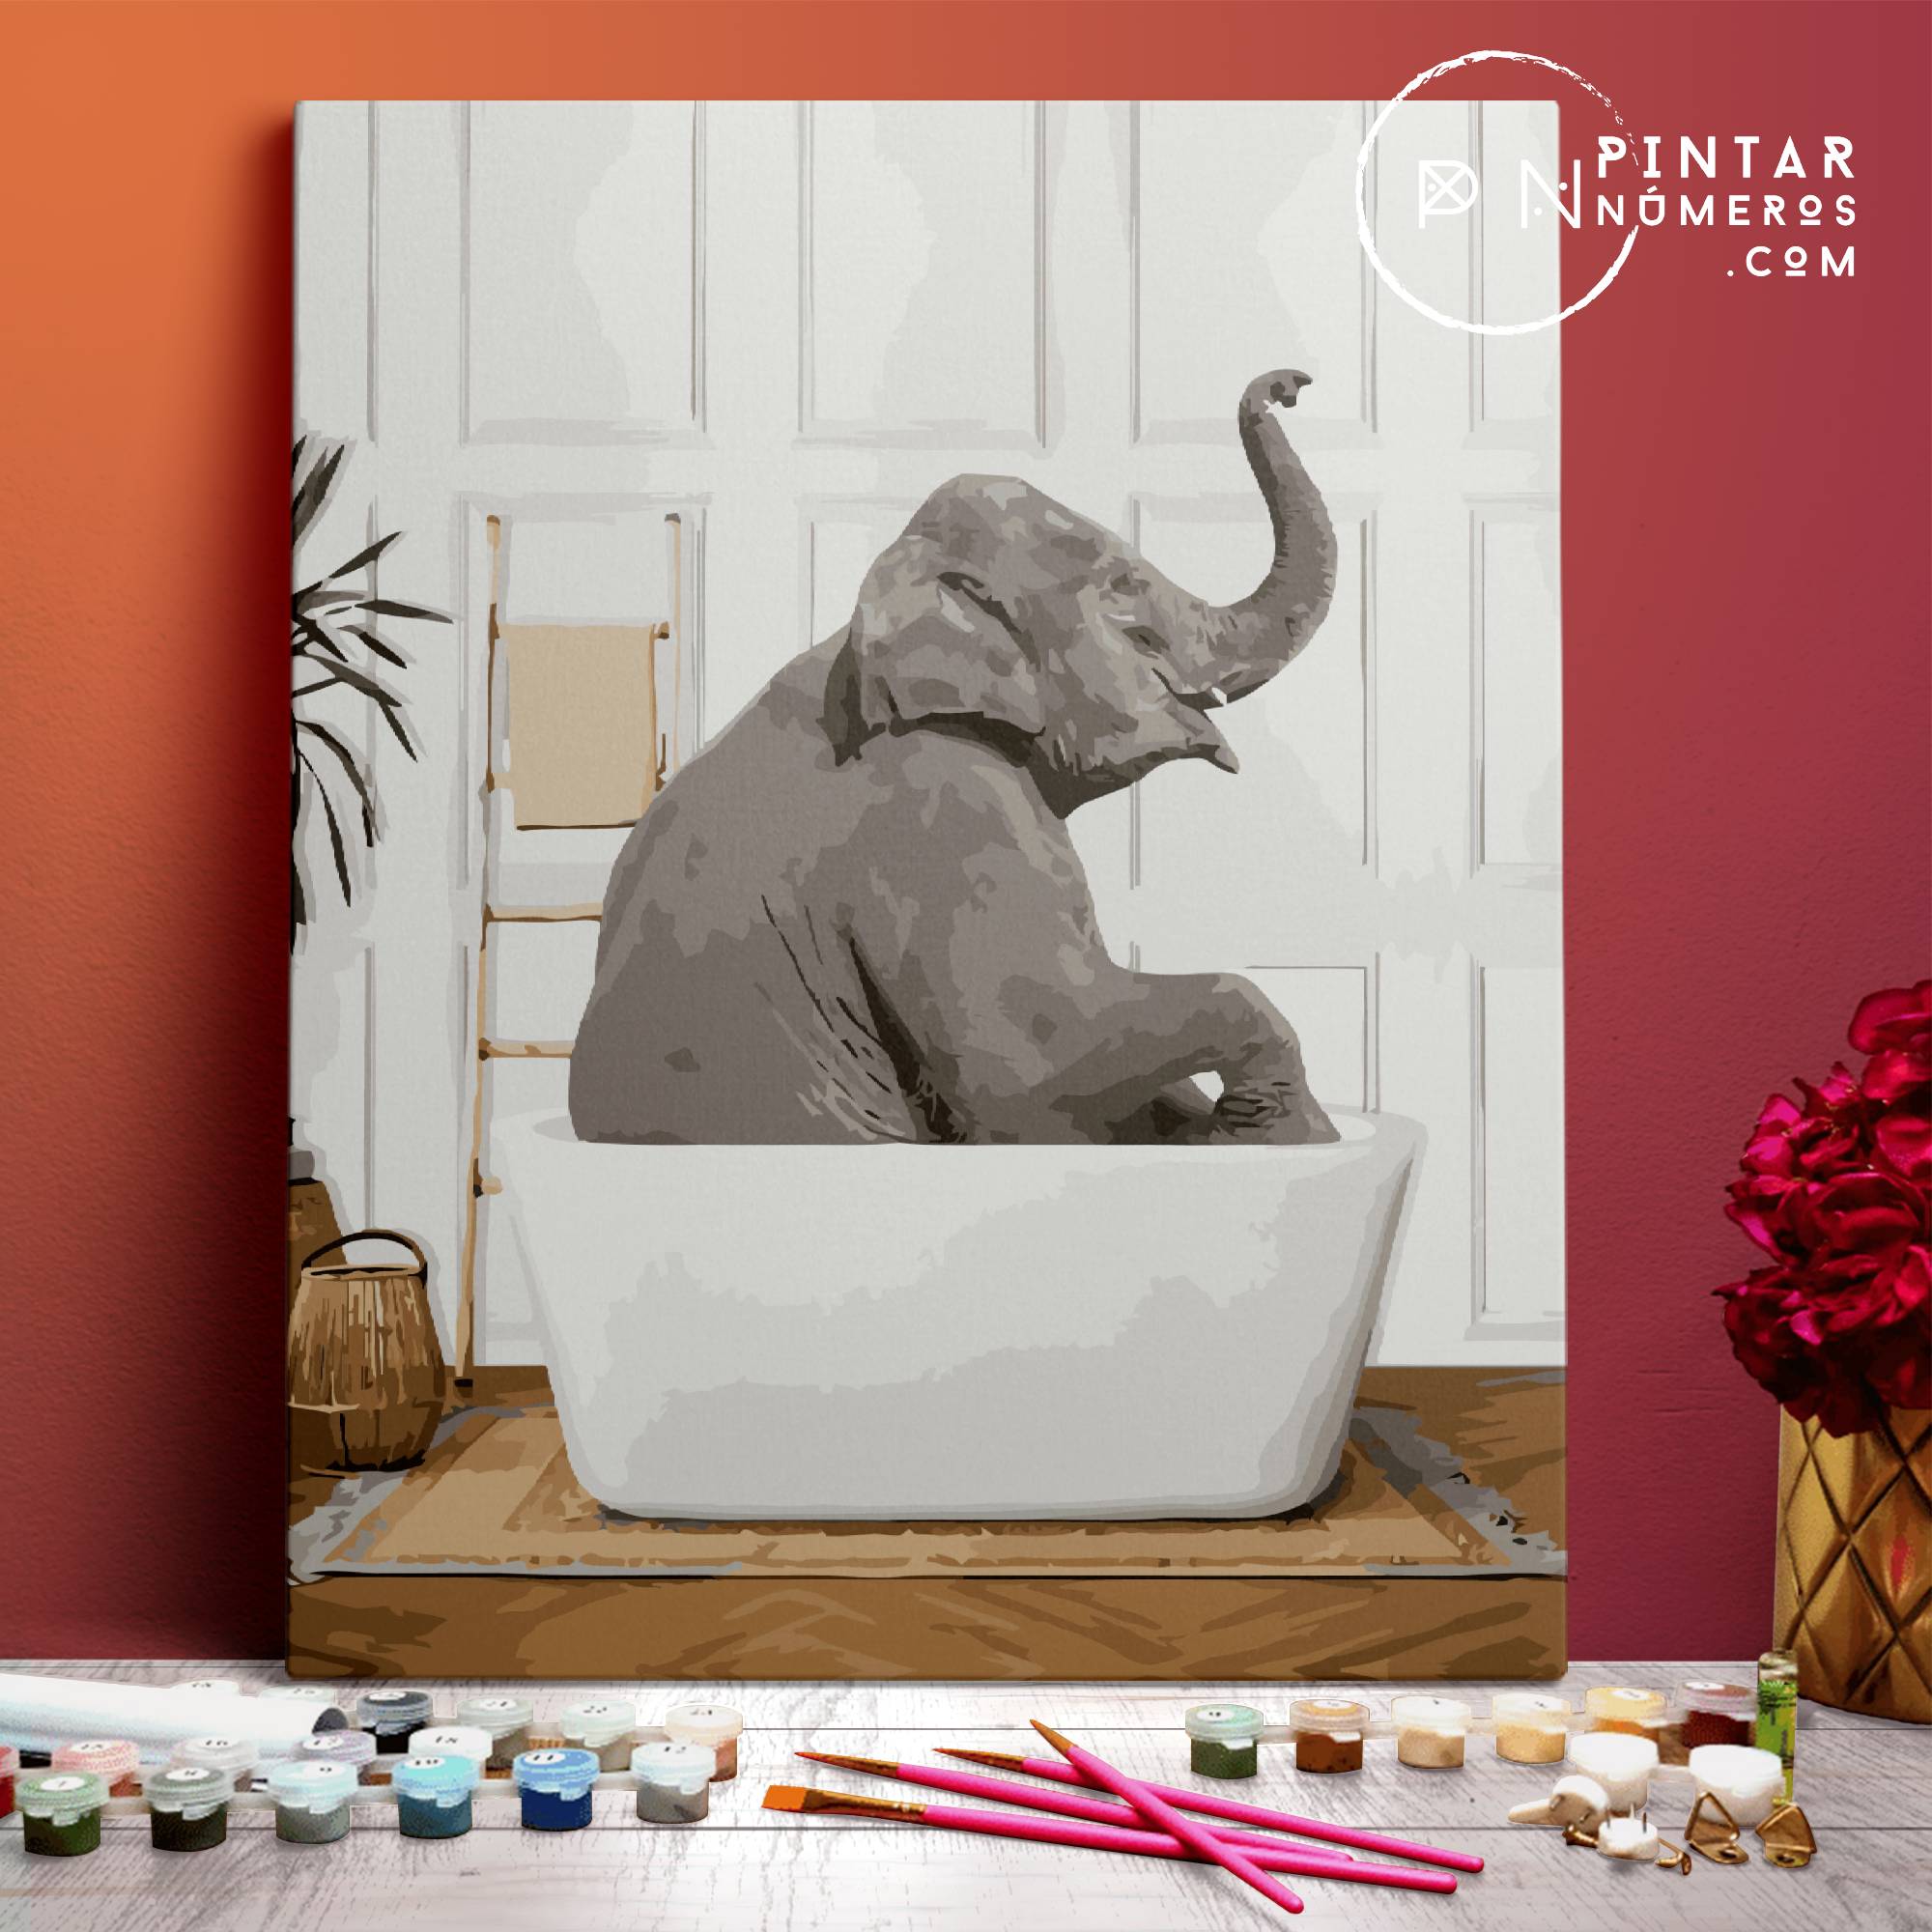 Elephant in the bathtub - Pintar Números®